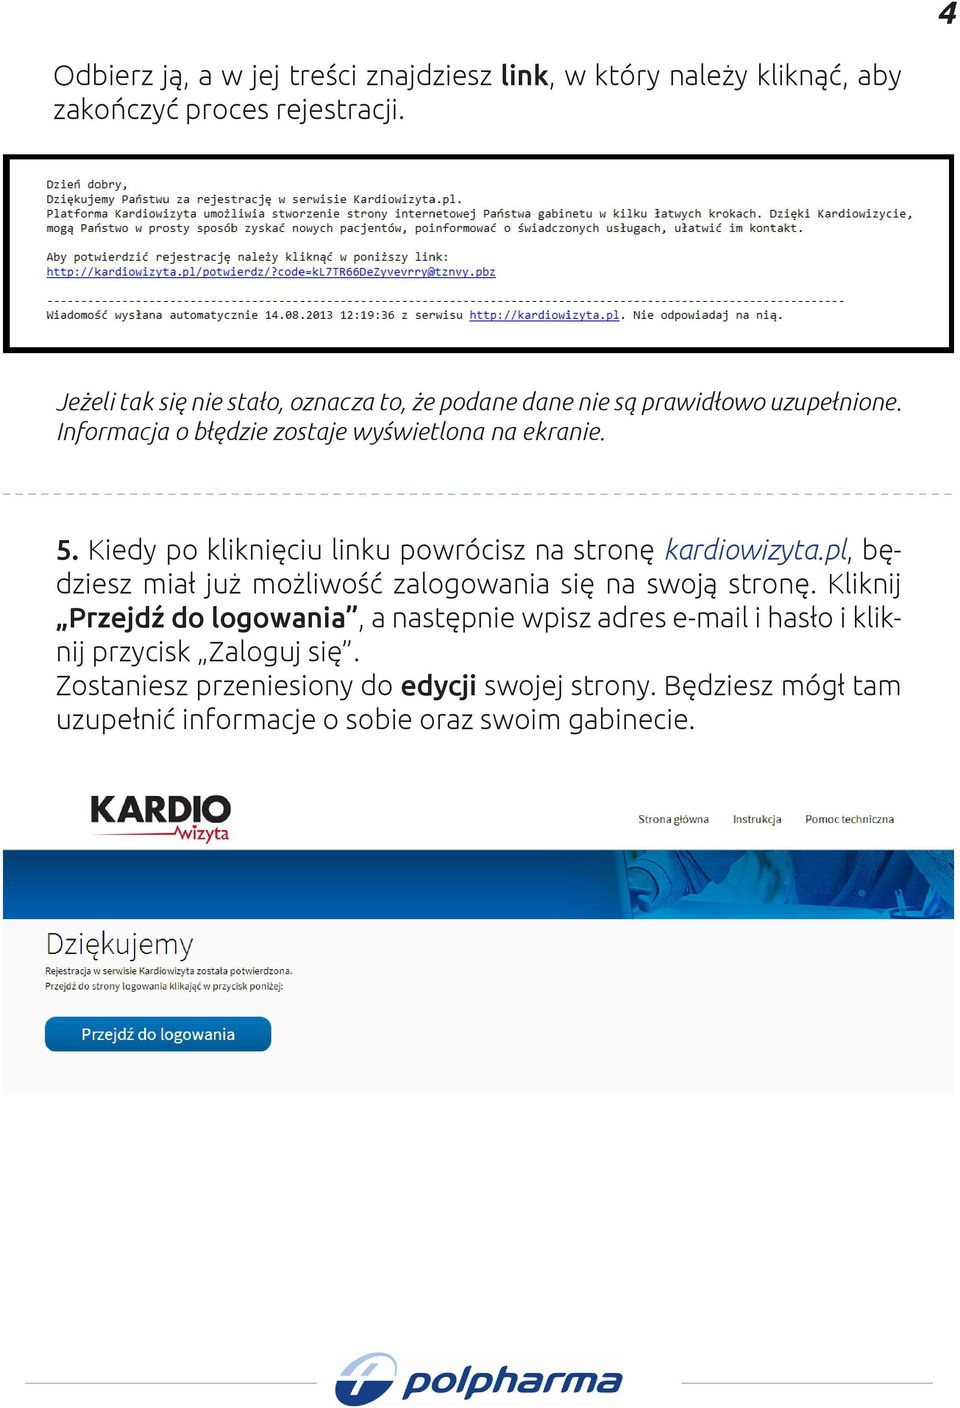 Kiedy po kliknięciu linku powrócisz na stronę kardiowizyta.pl, będziesz miał już możliwość zalogowania się na swoją stronę.